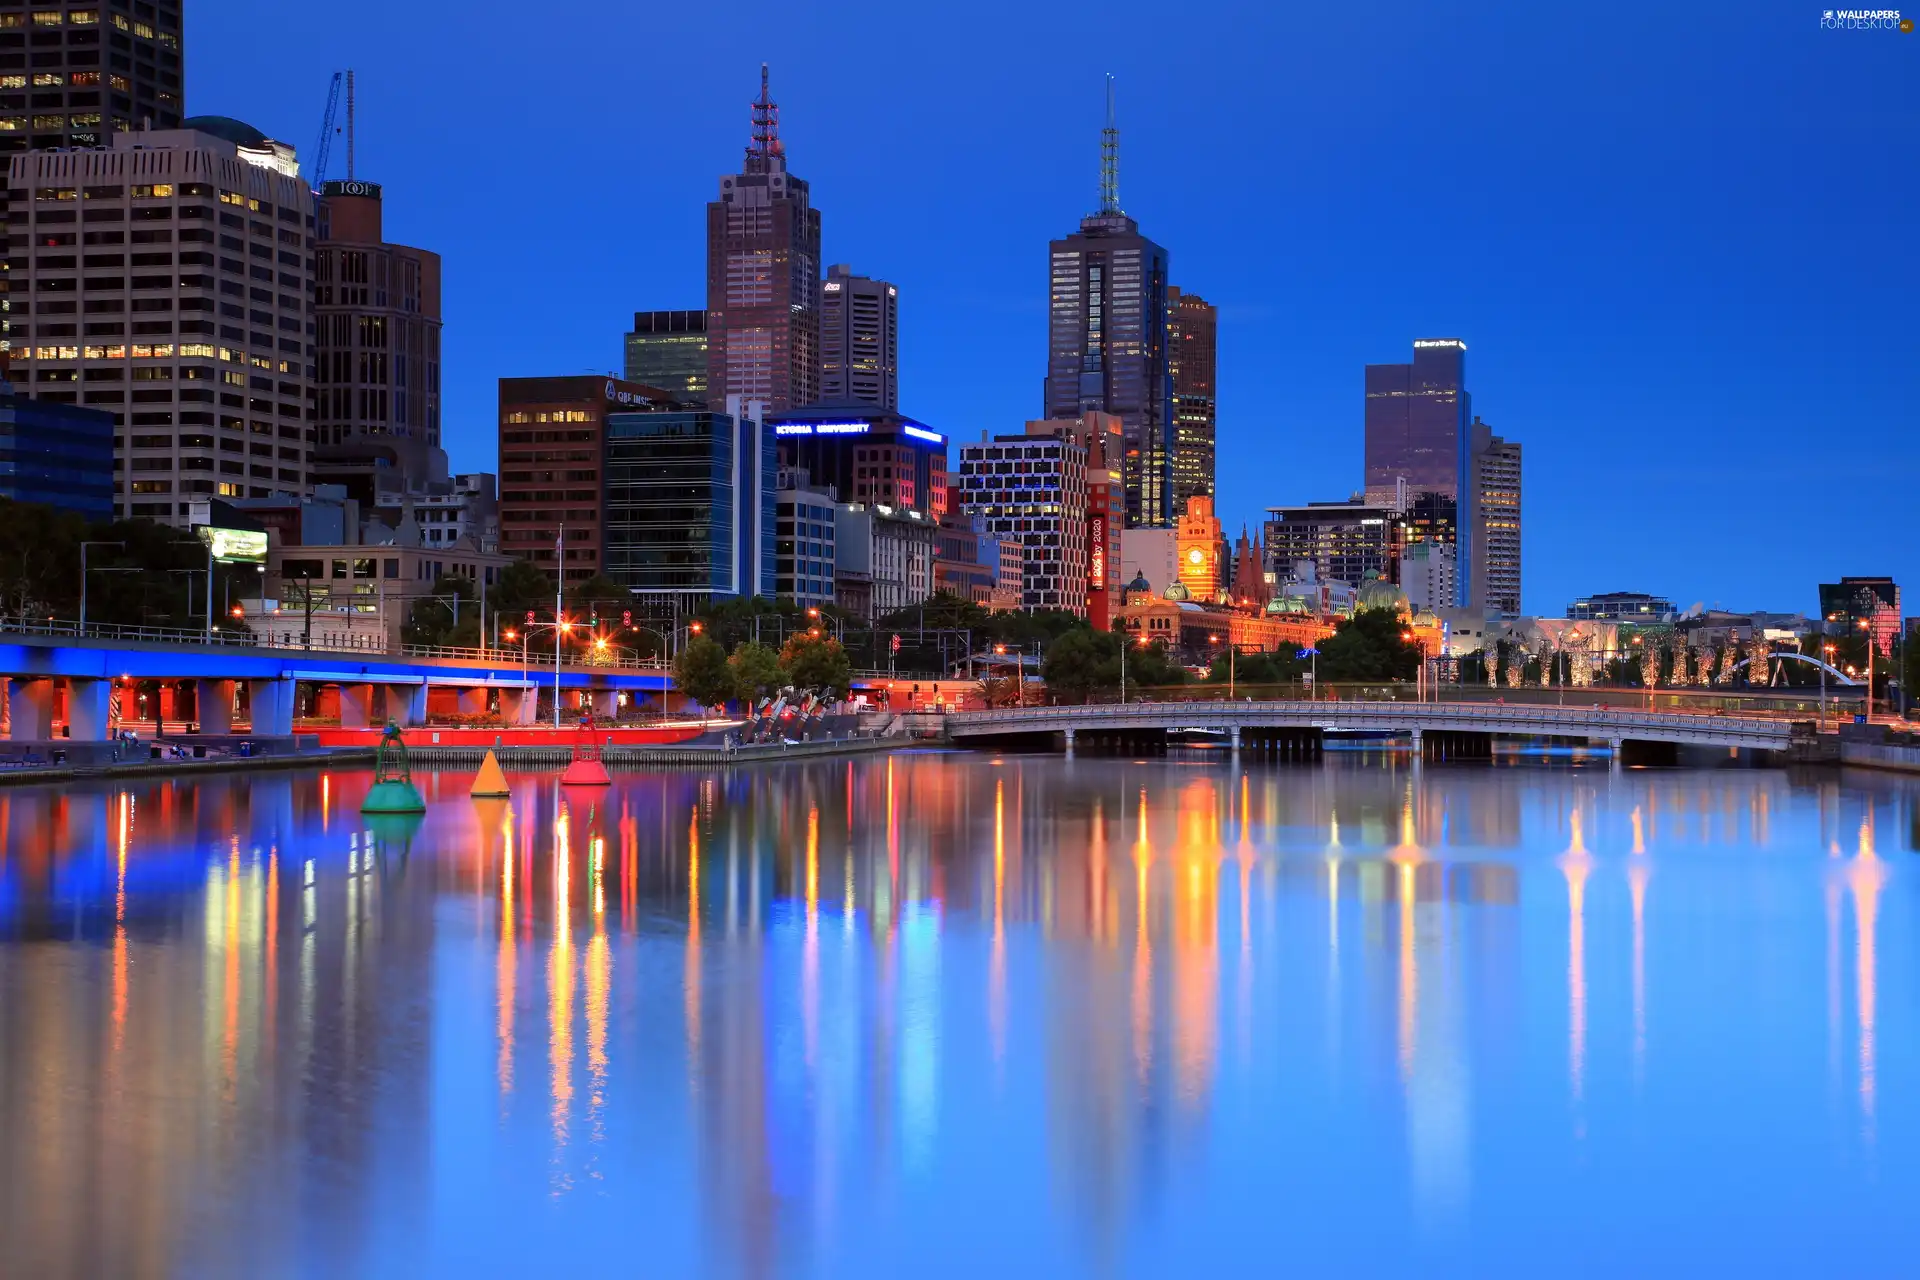 Melbourne, Australia, bridge, River, skyscrapers